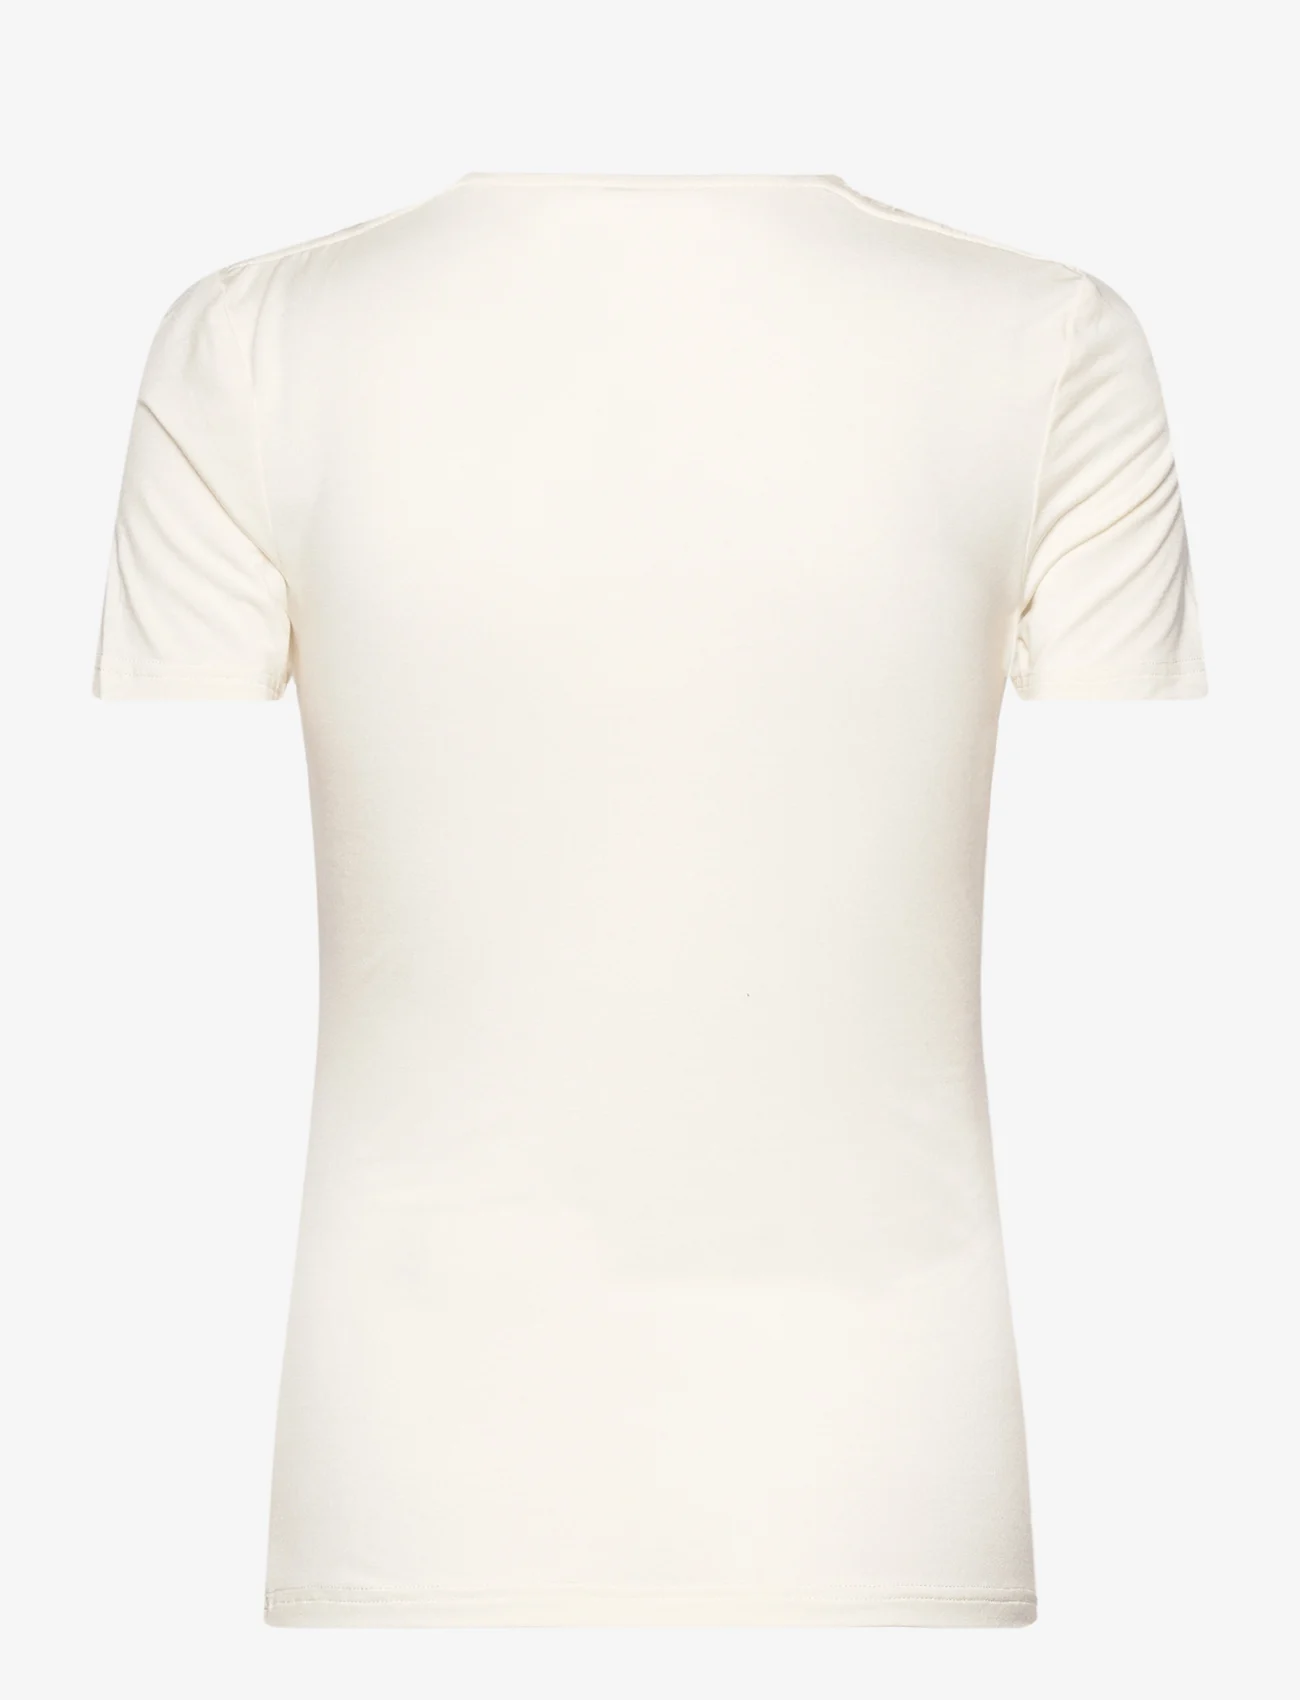 Rosemunde - Viscose t-shirt - t-särgid - ivory - 1